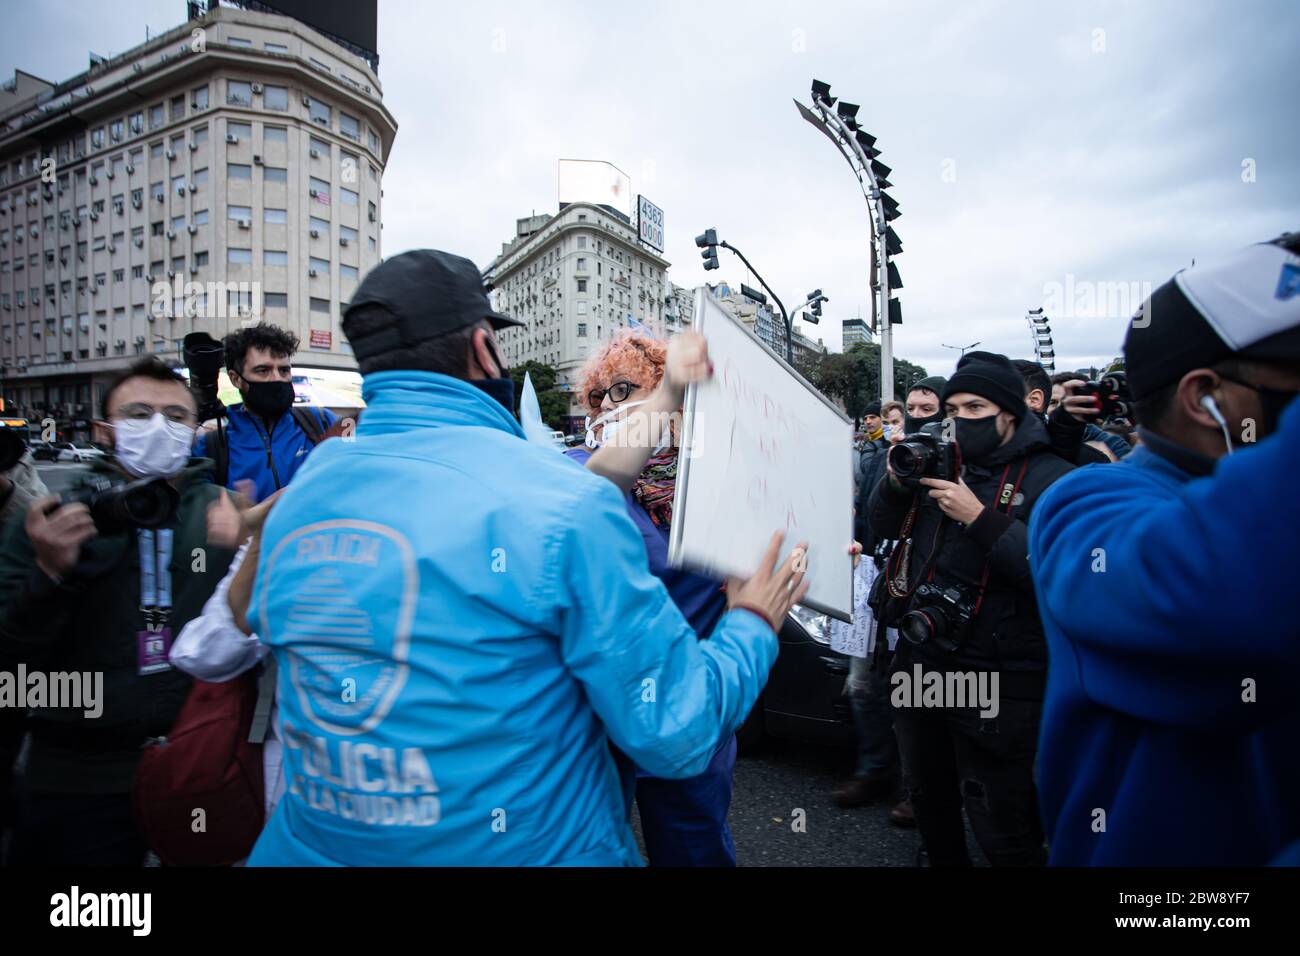 Buenos Aires, Argentinien - 30. Mai 2020: Nicht identifizierte Person, die von Demonstranten ausgestoßen wird, versammelten sich in der Innenstadt von Buenos Aires, um gegen sie zu protestieren Stockfoto